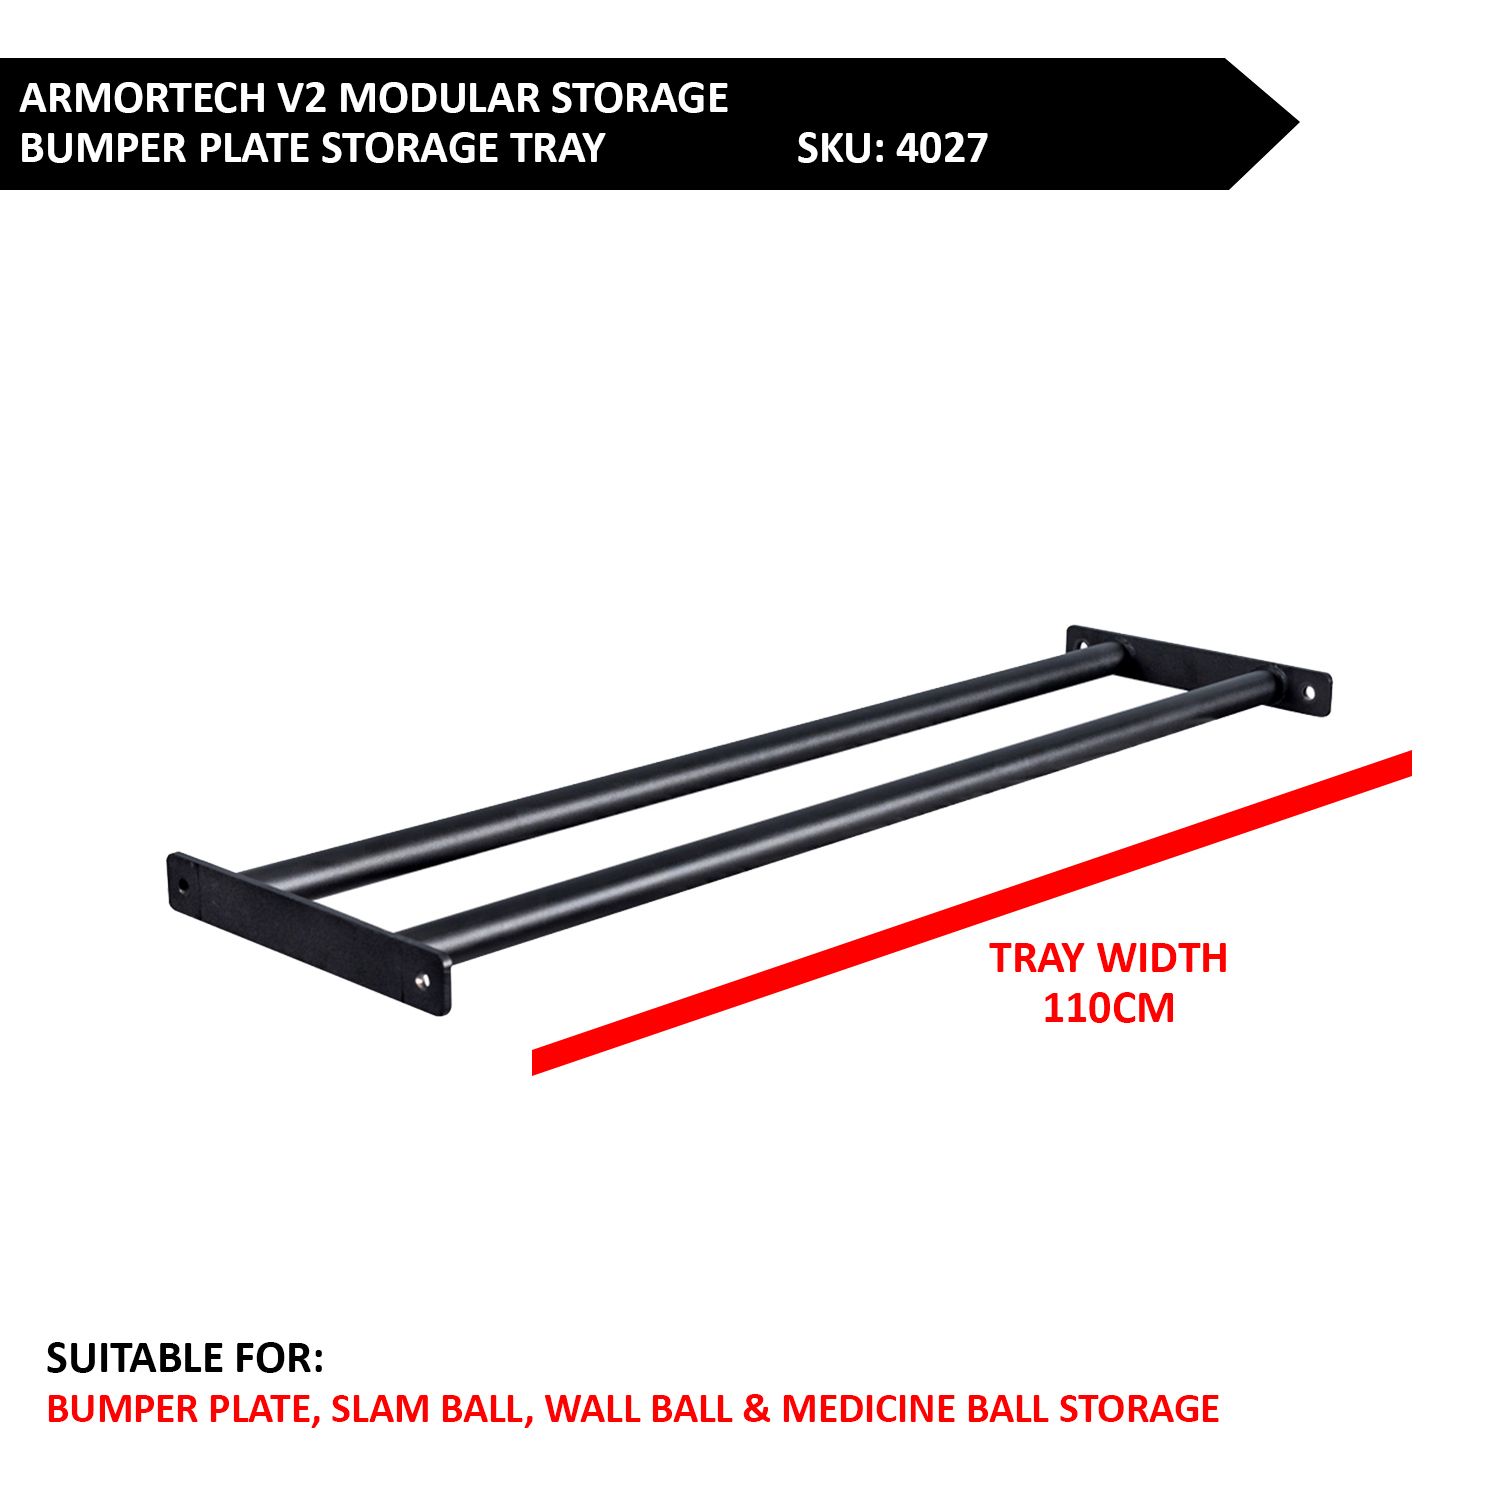 Armortech V2 Modular Component - Bumper Plate Storage